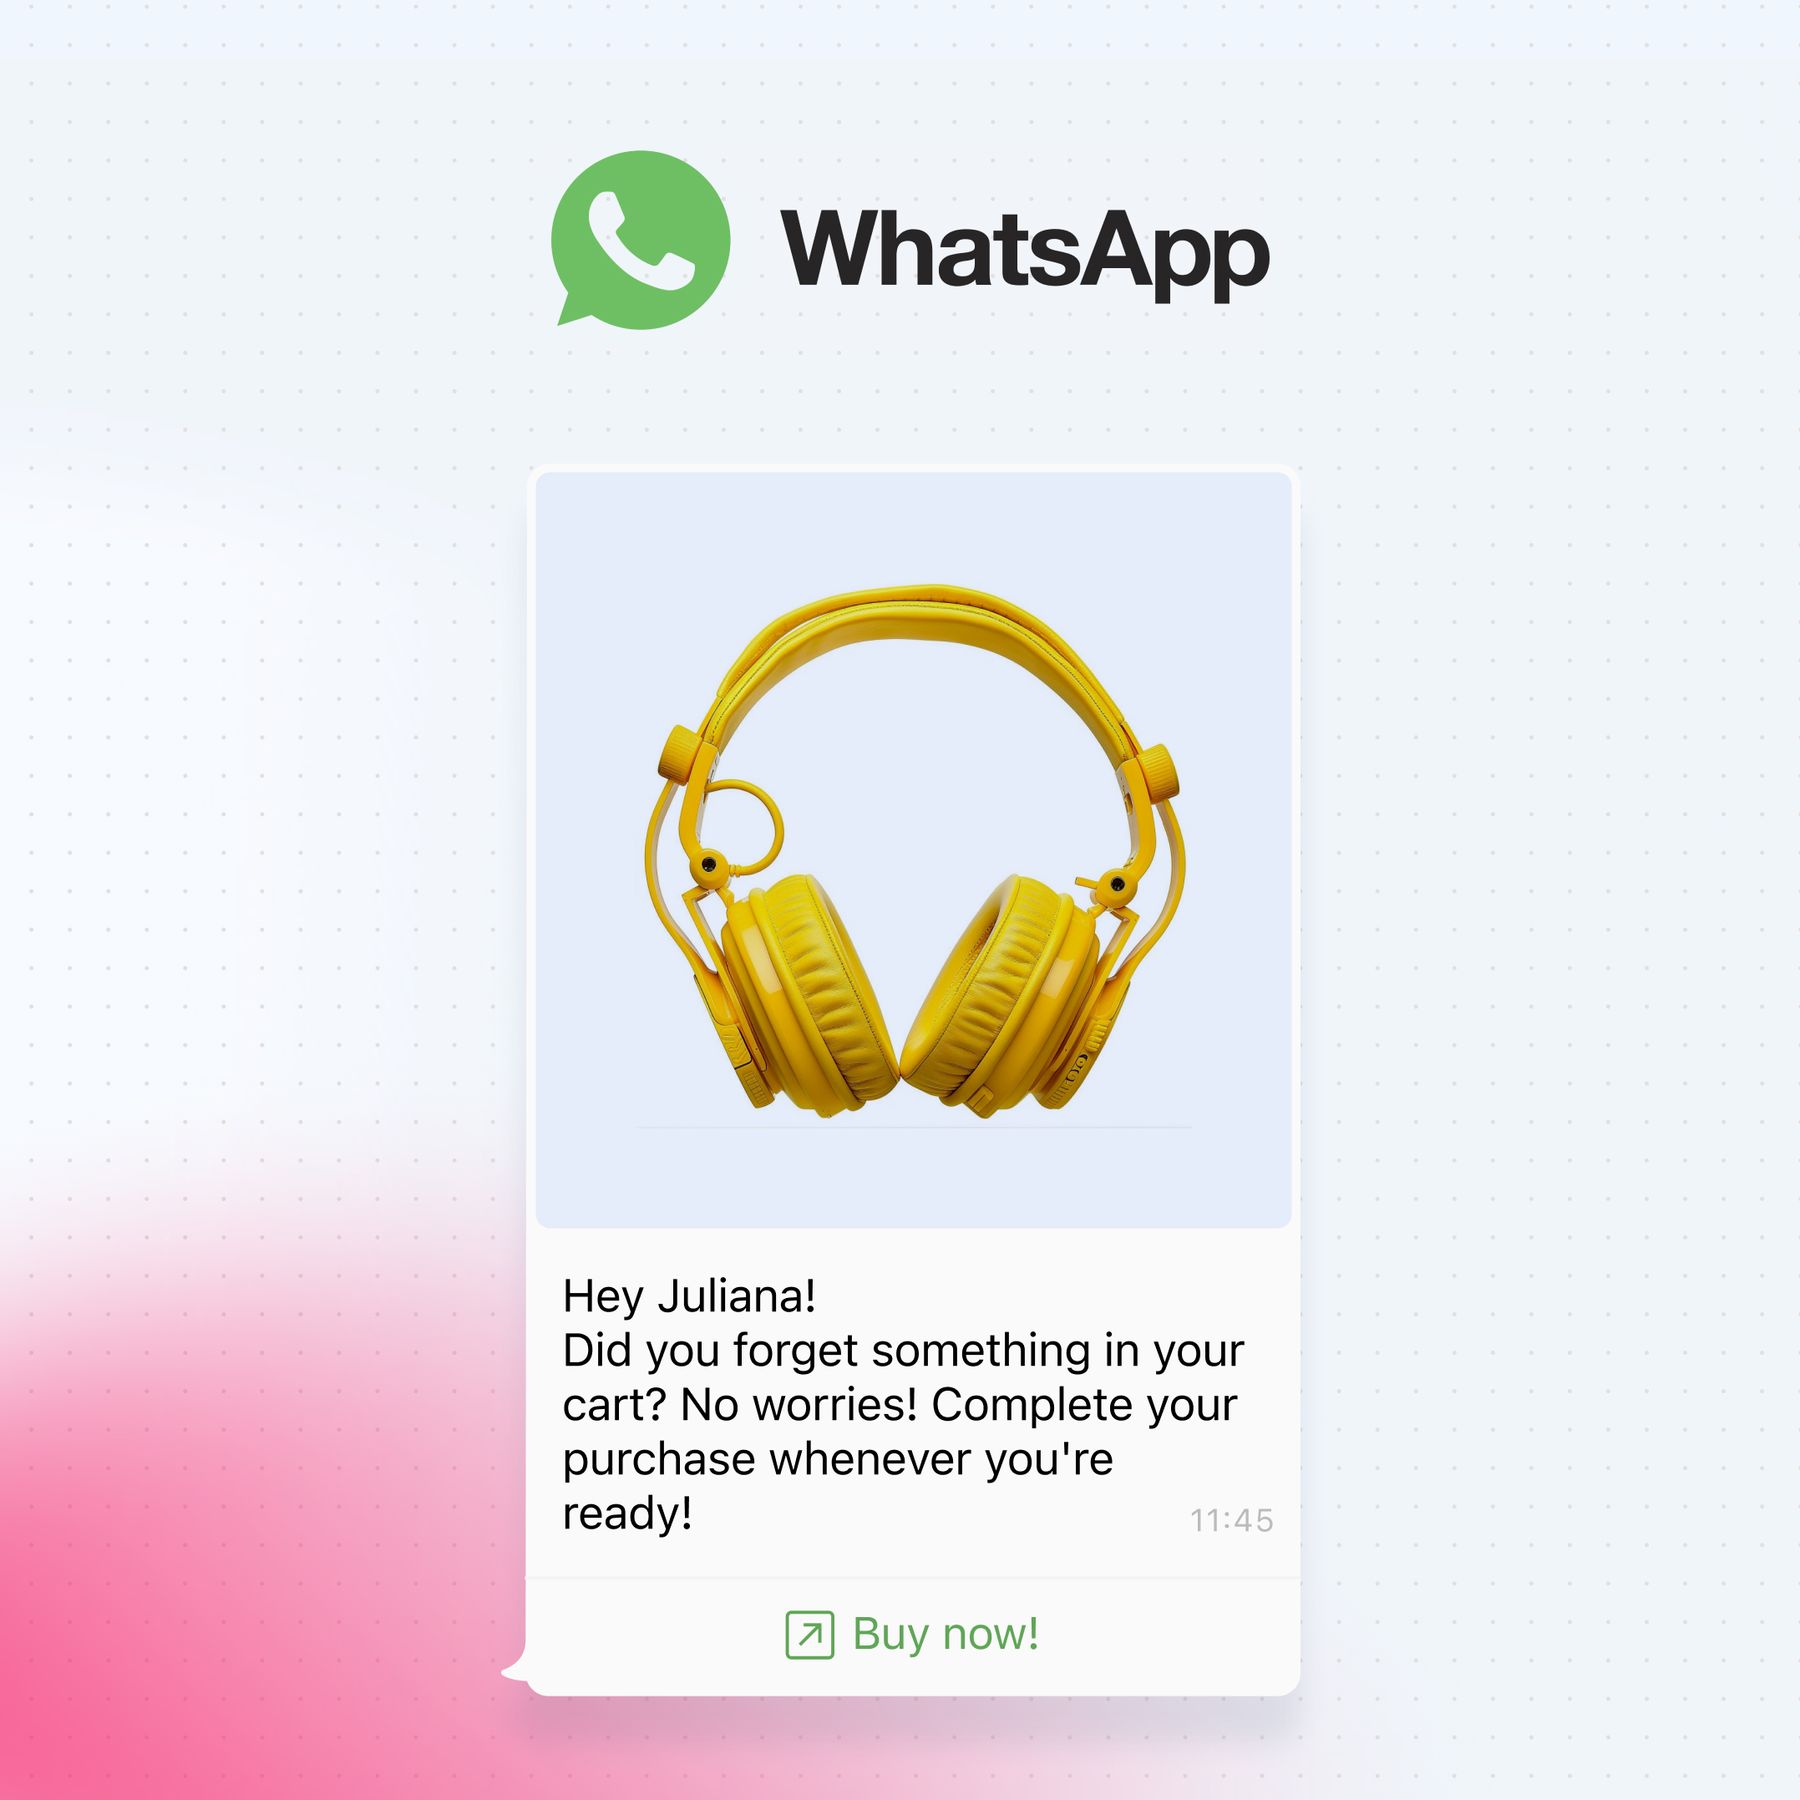 Whatsapp AI Campaigns Launch